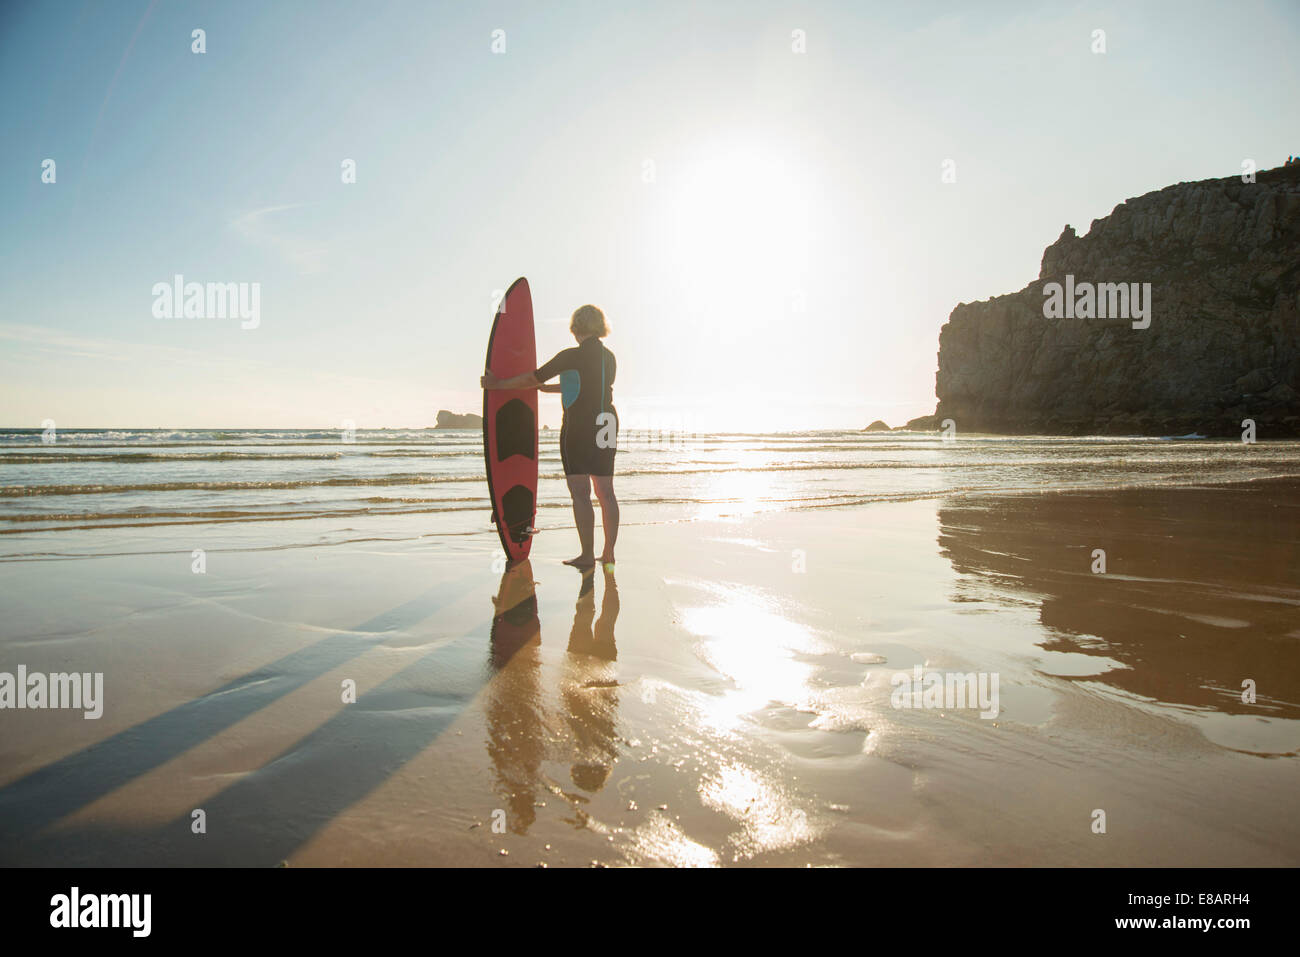 La silhouette du senior woman standing on beach with surfboard, Camaret-sur-mer, Bretagne, France Banque D'Images